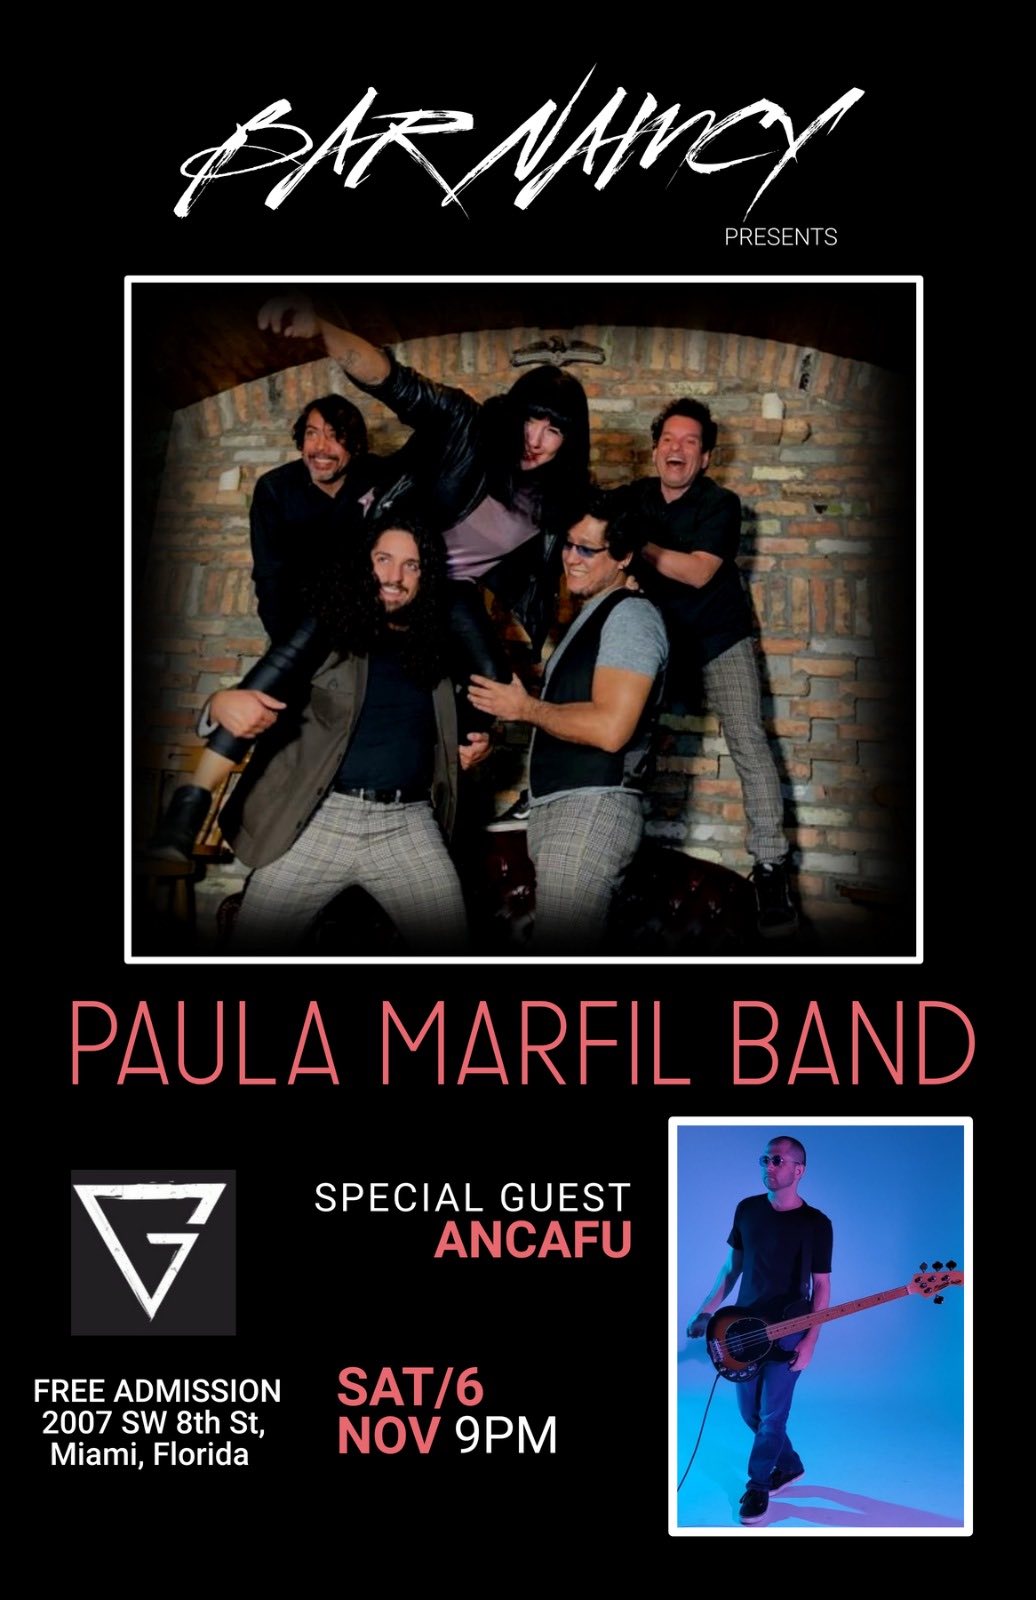 Paula Marfil Band at Bar Nancy with special guest Ancafu - Sat Nov 6 at 9PM